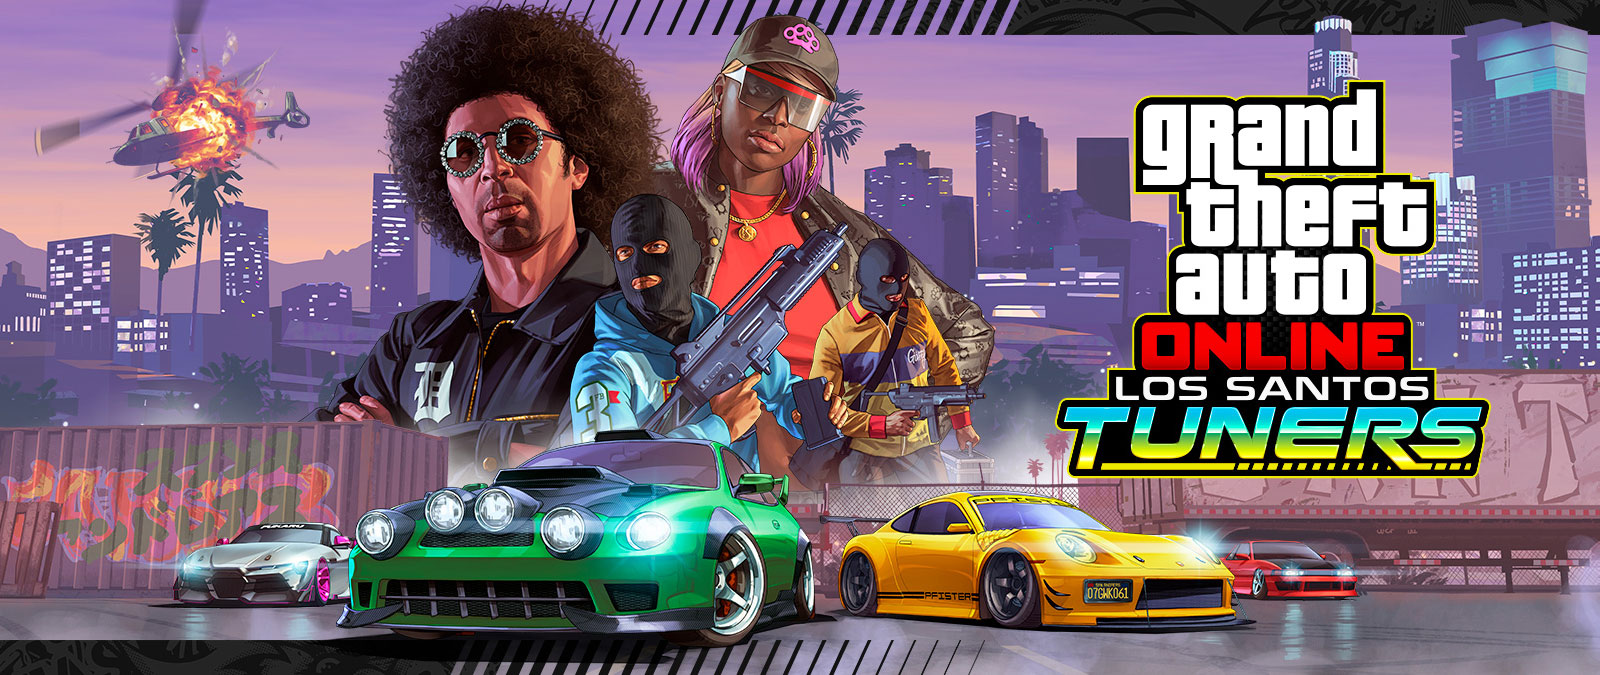 Grand Theft Auto Online, Los Santos Tuners. Τέσσερις χαρακτήρες που ποζάρουν, μπροστά στον ορίζοντα της πόλης και τέσσερα super car από κάτω τους 